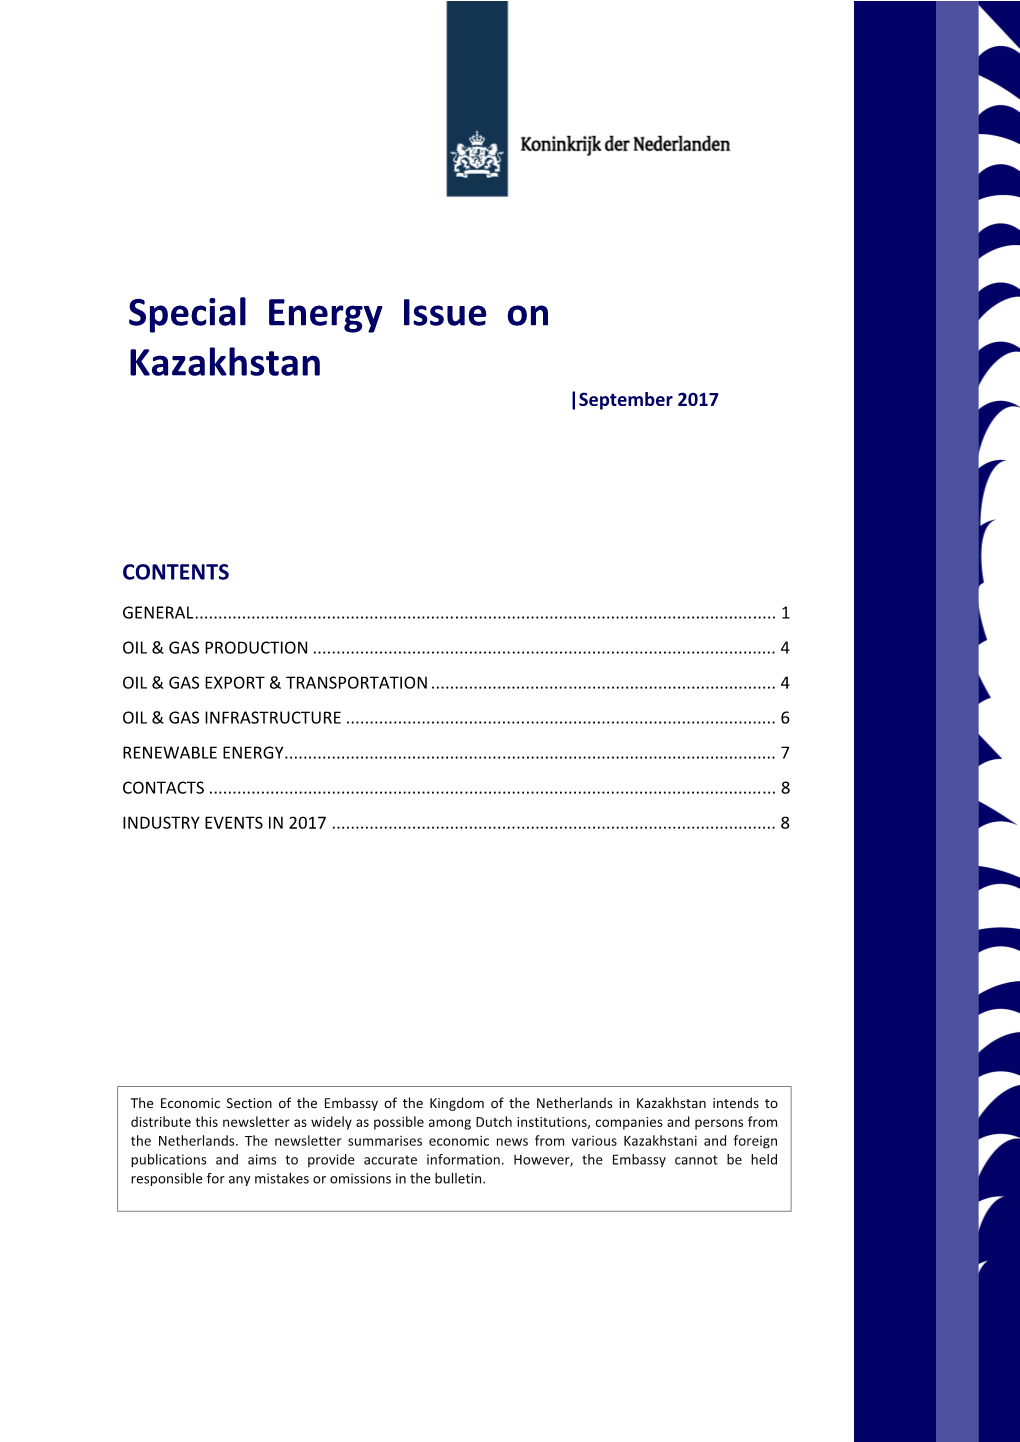 Special Energy Issue on Kazakhstan |September 2017